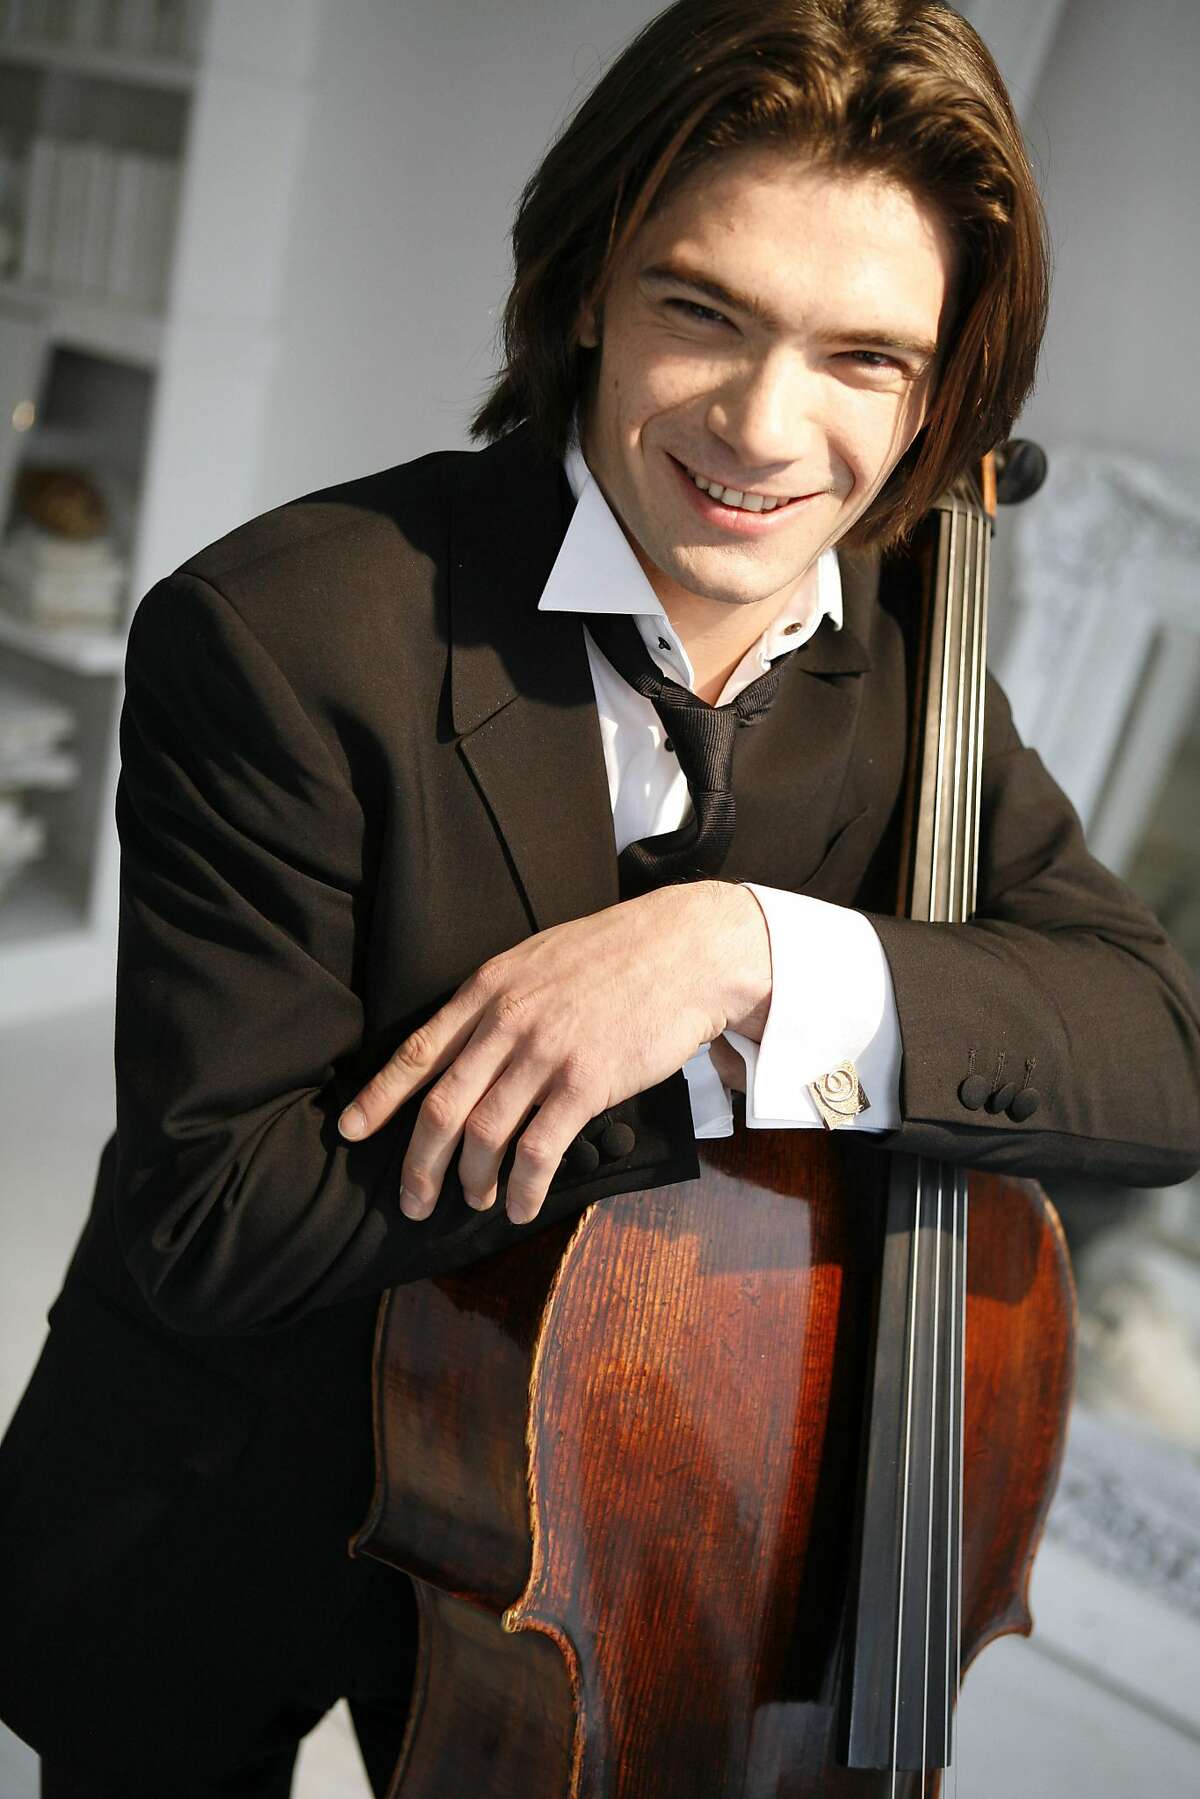 Cellist Gautier Capu�on